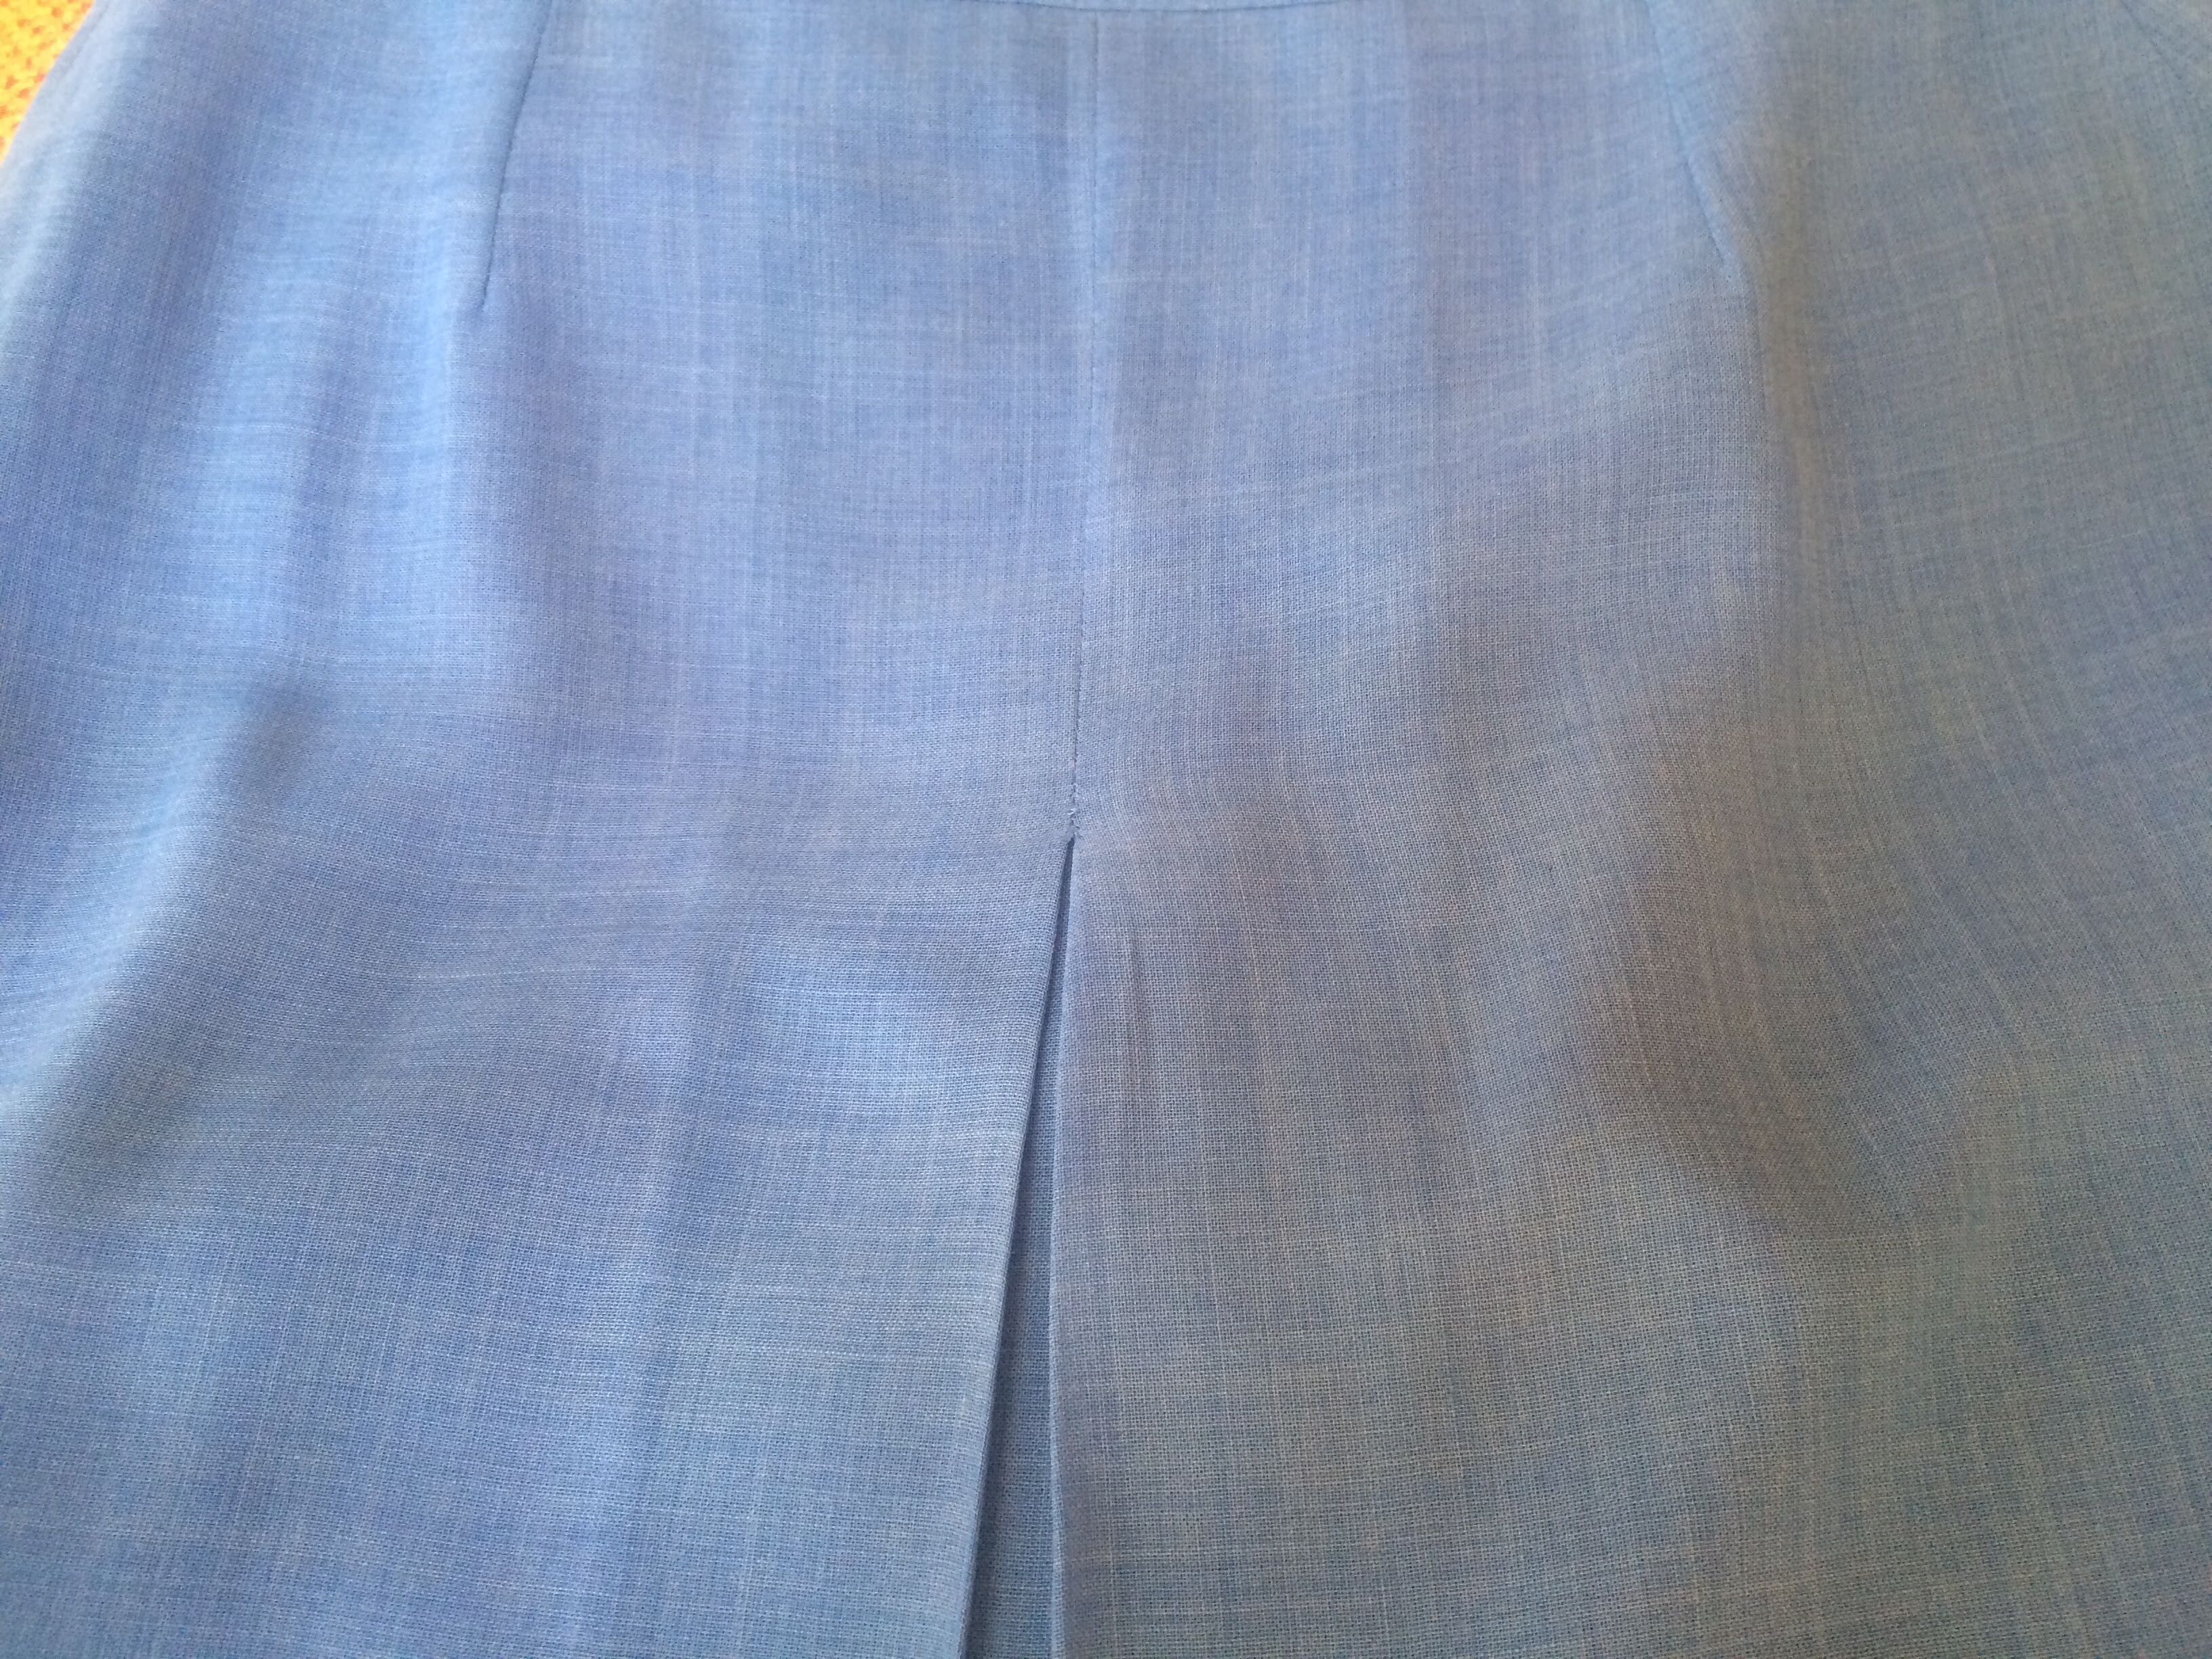 czyszczenie szafy spódnica  elegancka niebieska podszewka kontrafałdy